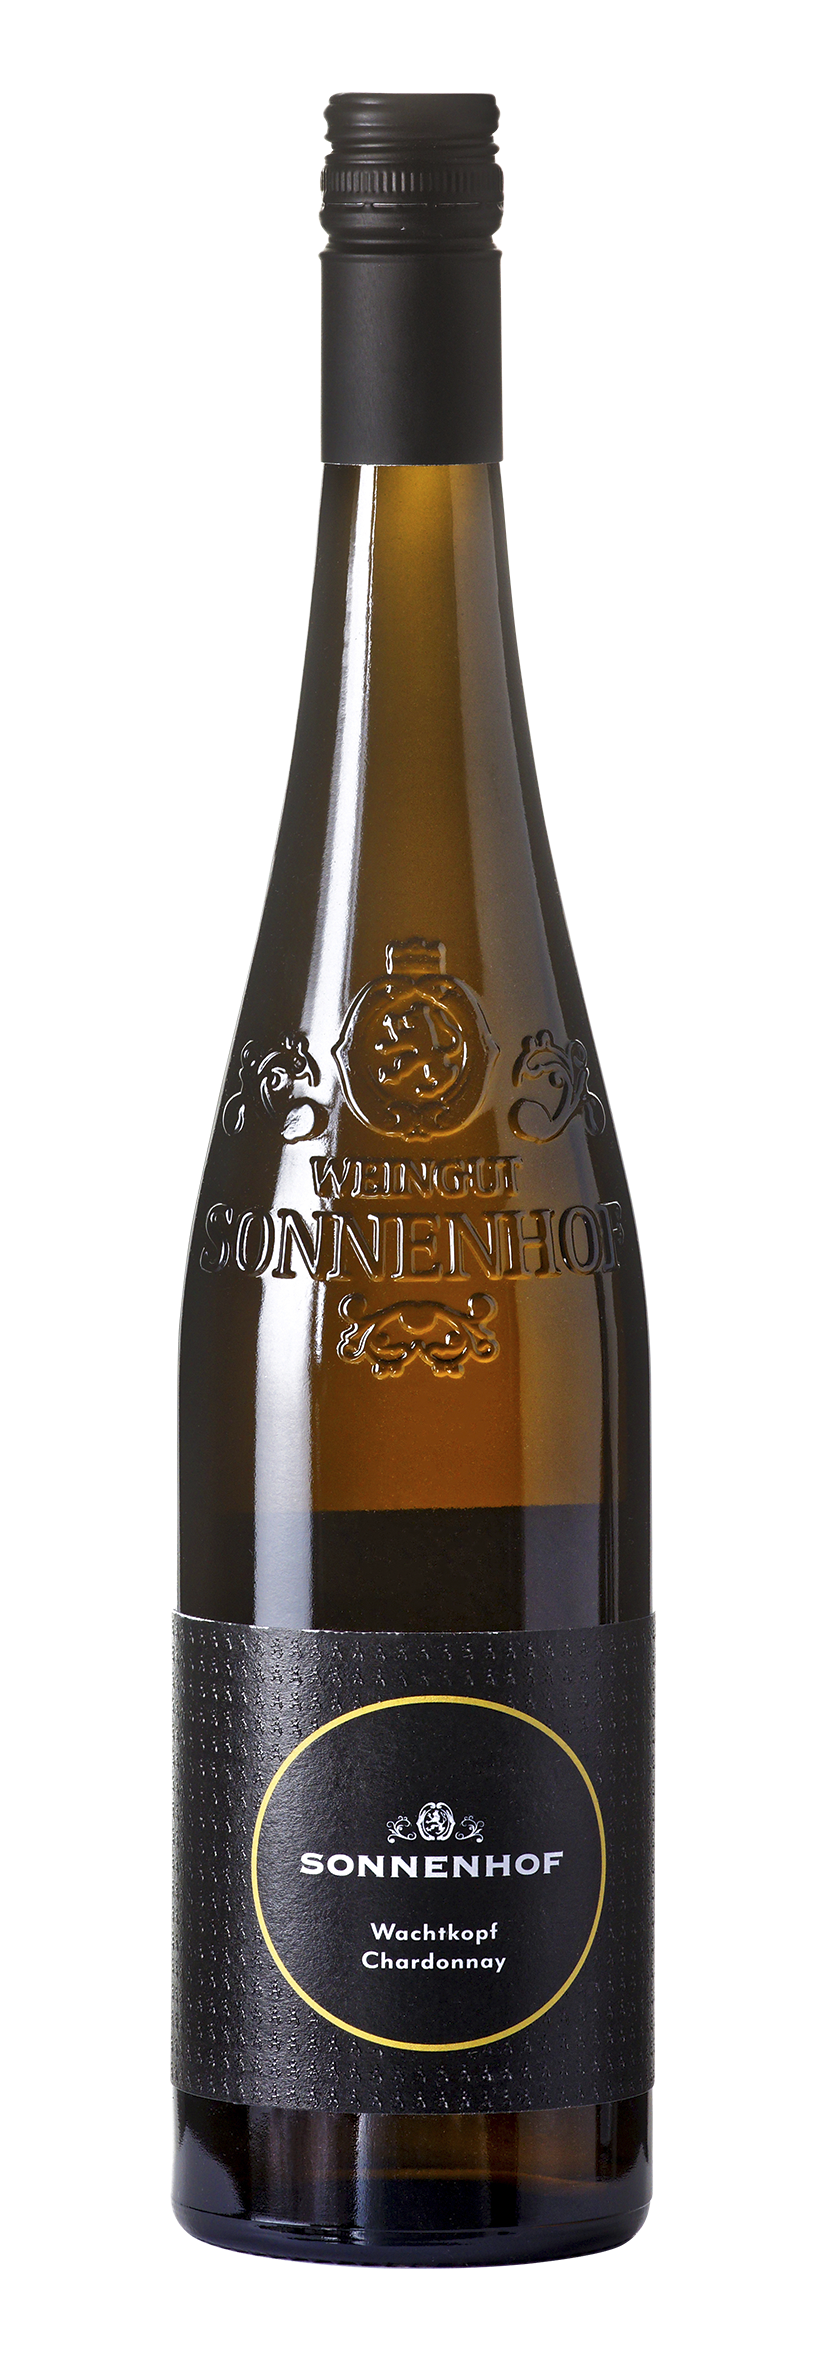 Gündelbacher Wachtkopf Chardonnay 2021